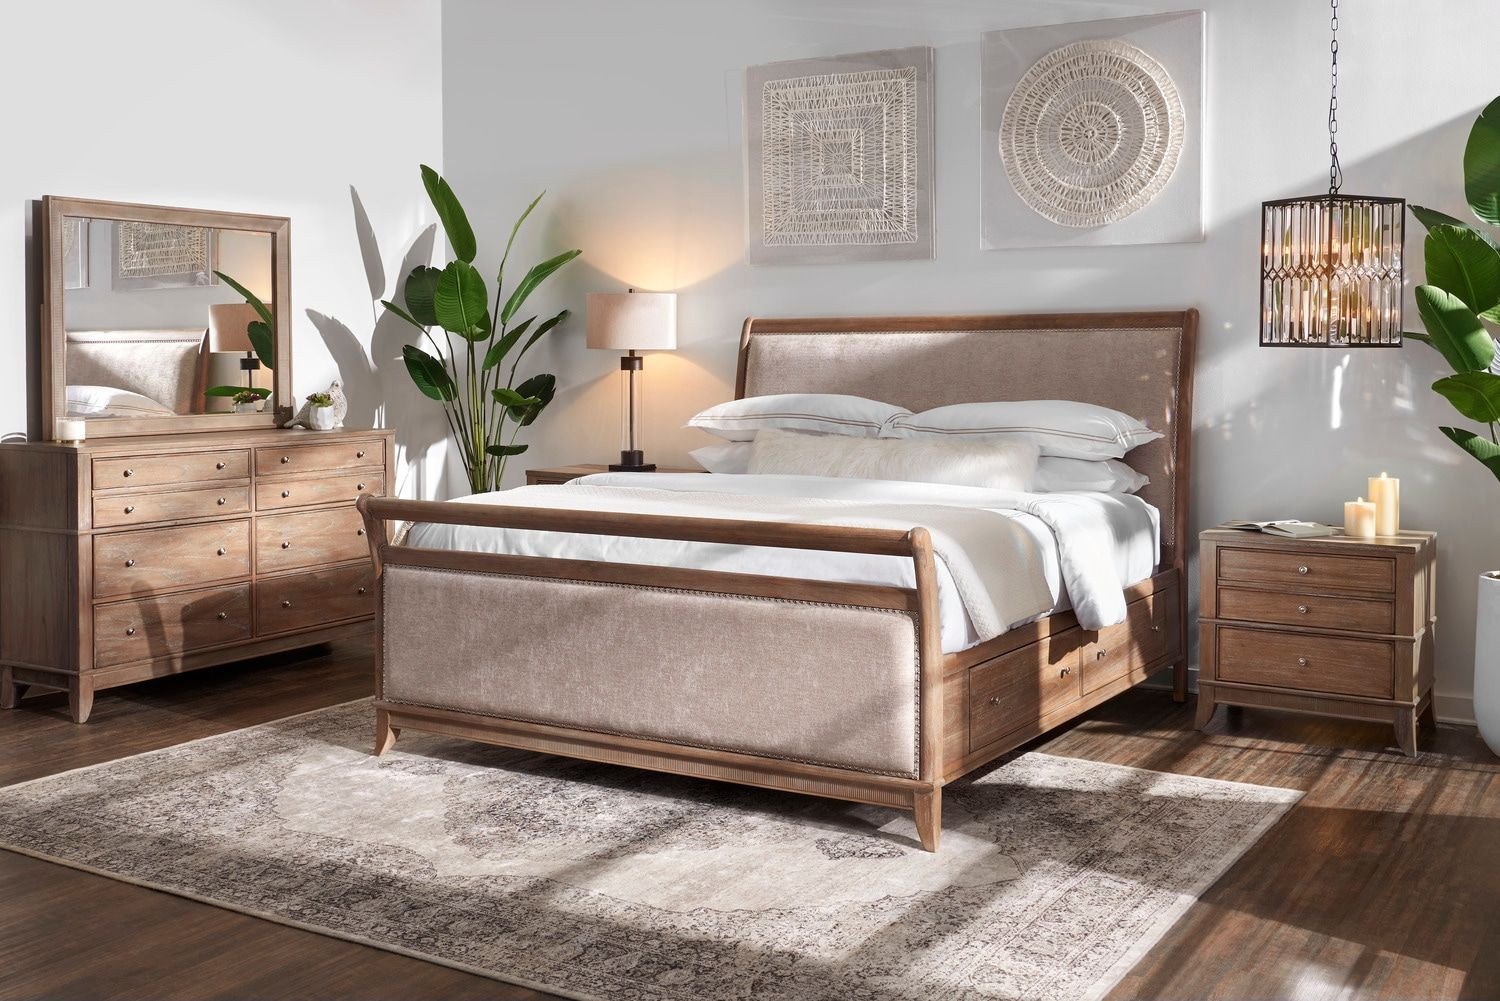 best value for money bedroom furniture